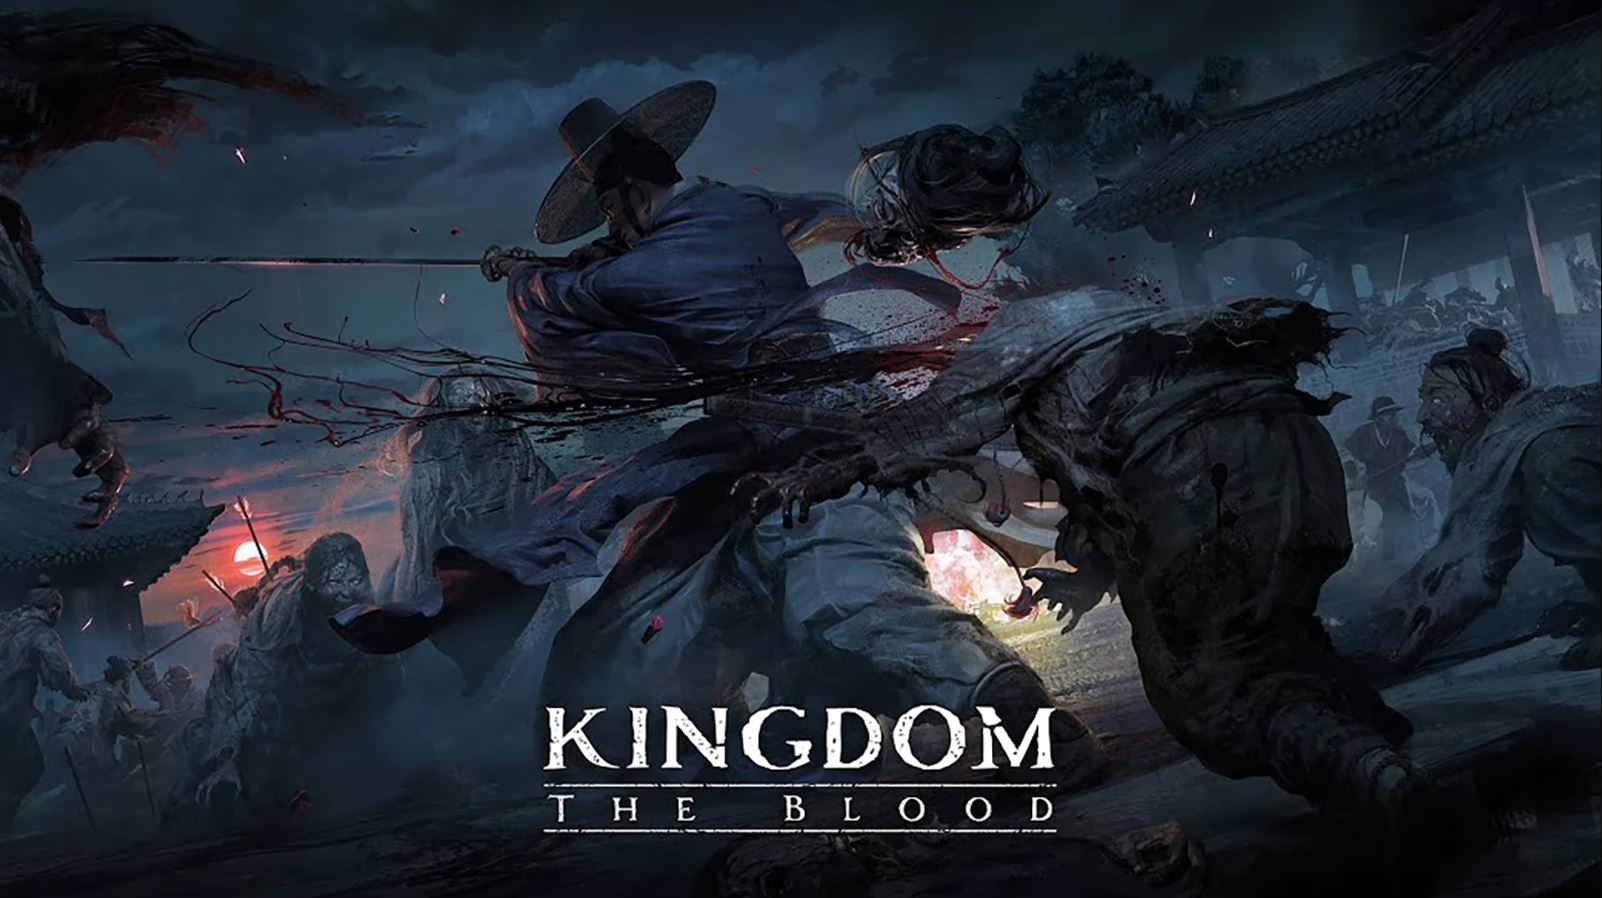 เปิดตัว Kingdom: The Blood เกมที่ดัดแปลงมาจากซีรีส์ดัง "Kingdom" พร้อมเผยตัวอย่างเกมเพลย์แรกอย่างเป็นทางการ